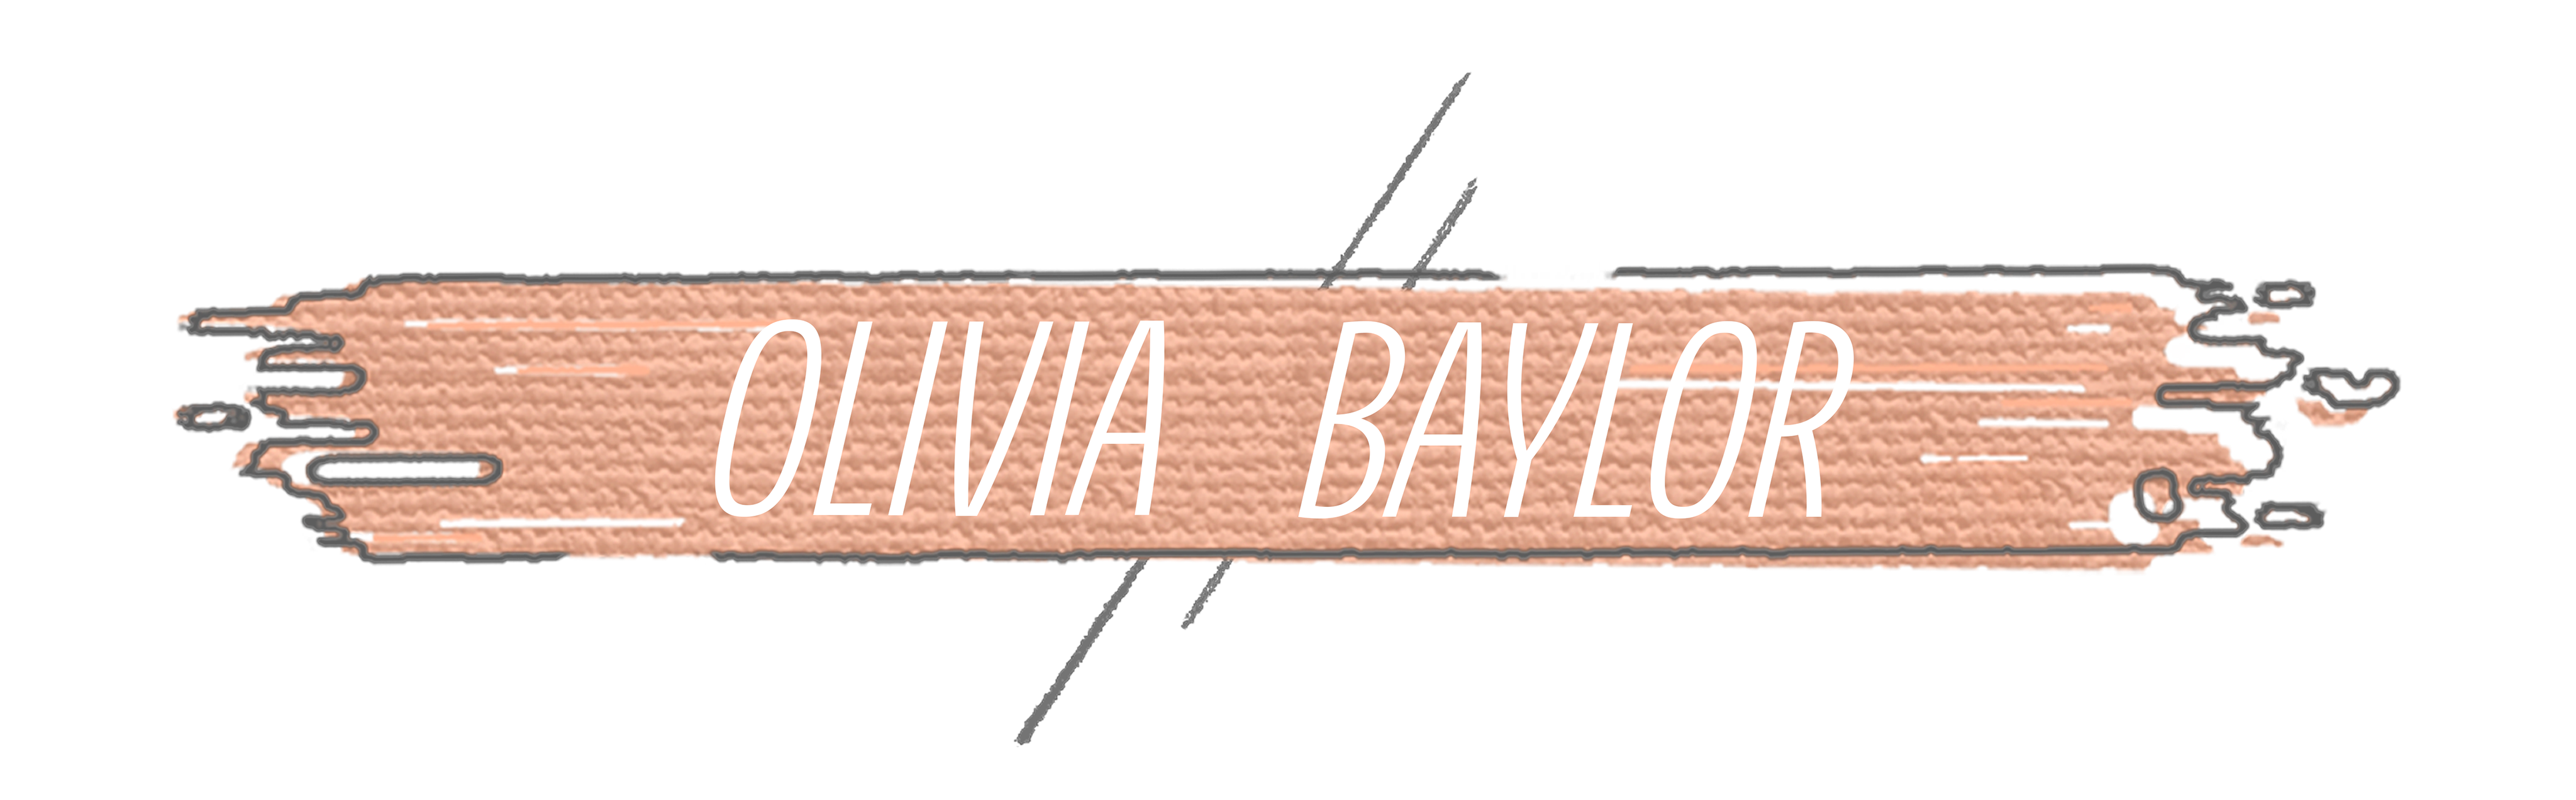 Olivia Baylor